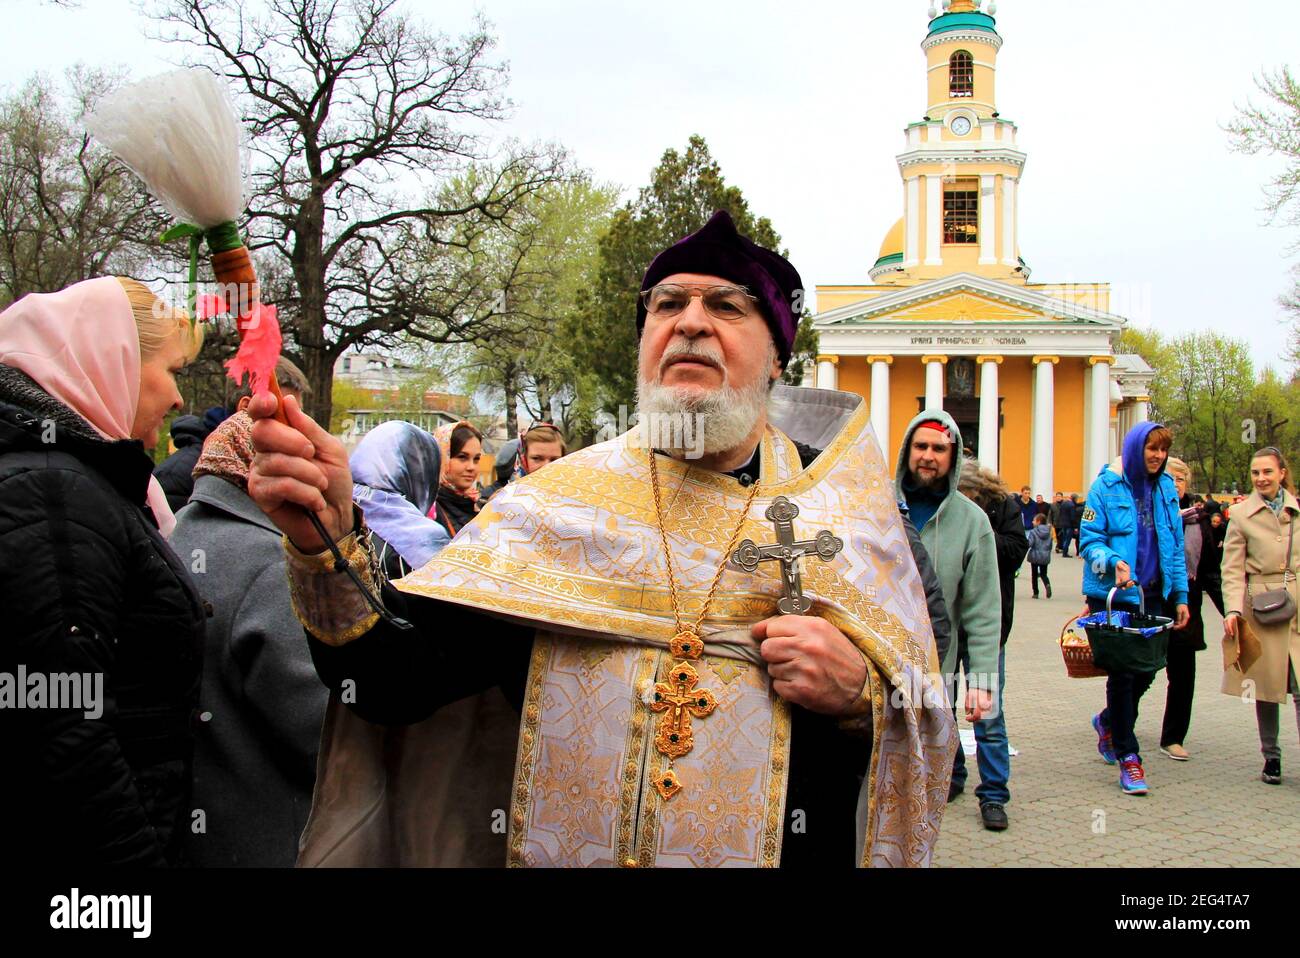 Le prêtre orthodoxe arrose les paroissiens à Pâques près de l'église. Rite religieux, Baptême de vacances près de la cathédrale chrétienne. Dnipro ville, Dnepr Banque D'Images